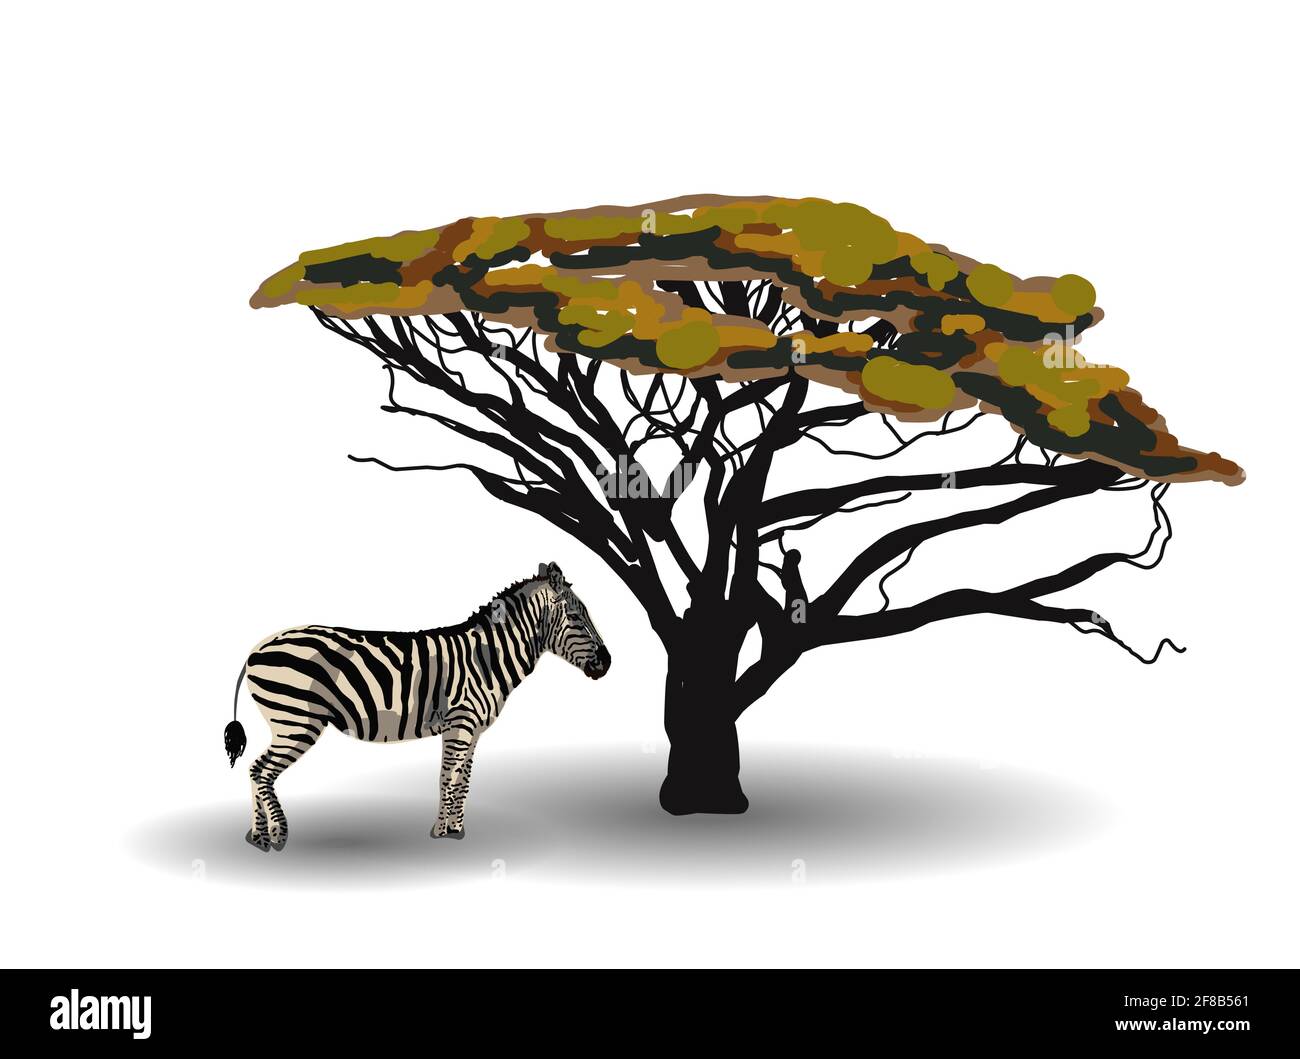 TENDENZA ETNICA. PITTURA IN STILE AFRICANO. zebra nella savana. Animale africano isolato su sfondo bianco. Illustrazione vettoriale. Illustrazione Vettoriale